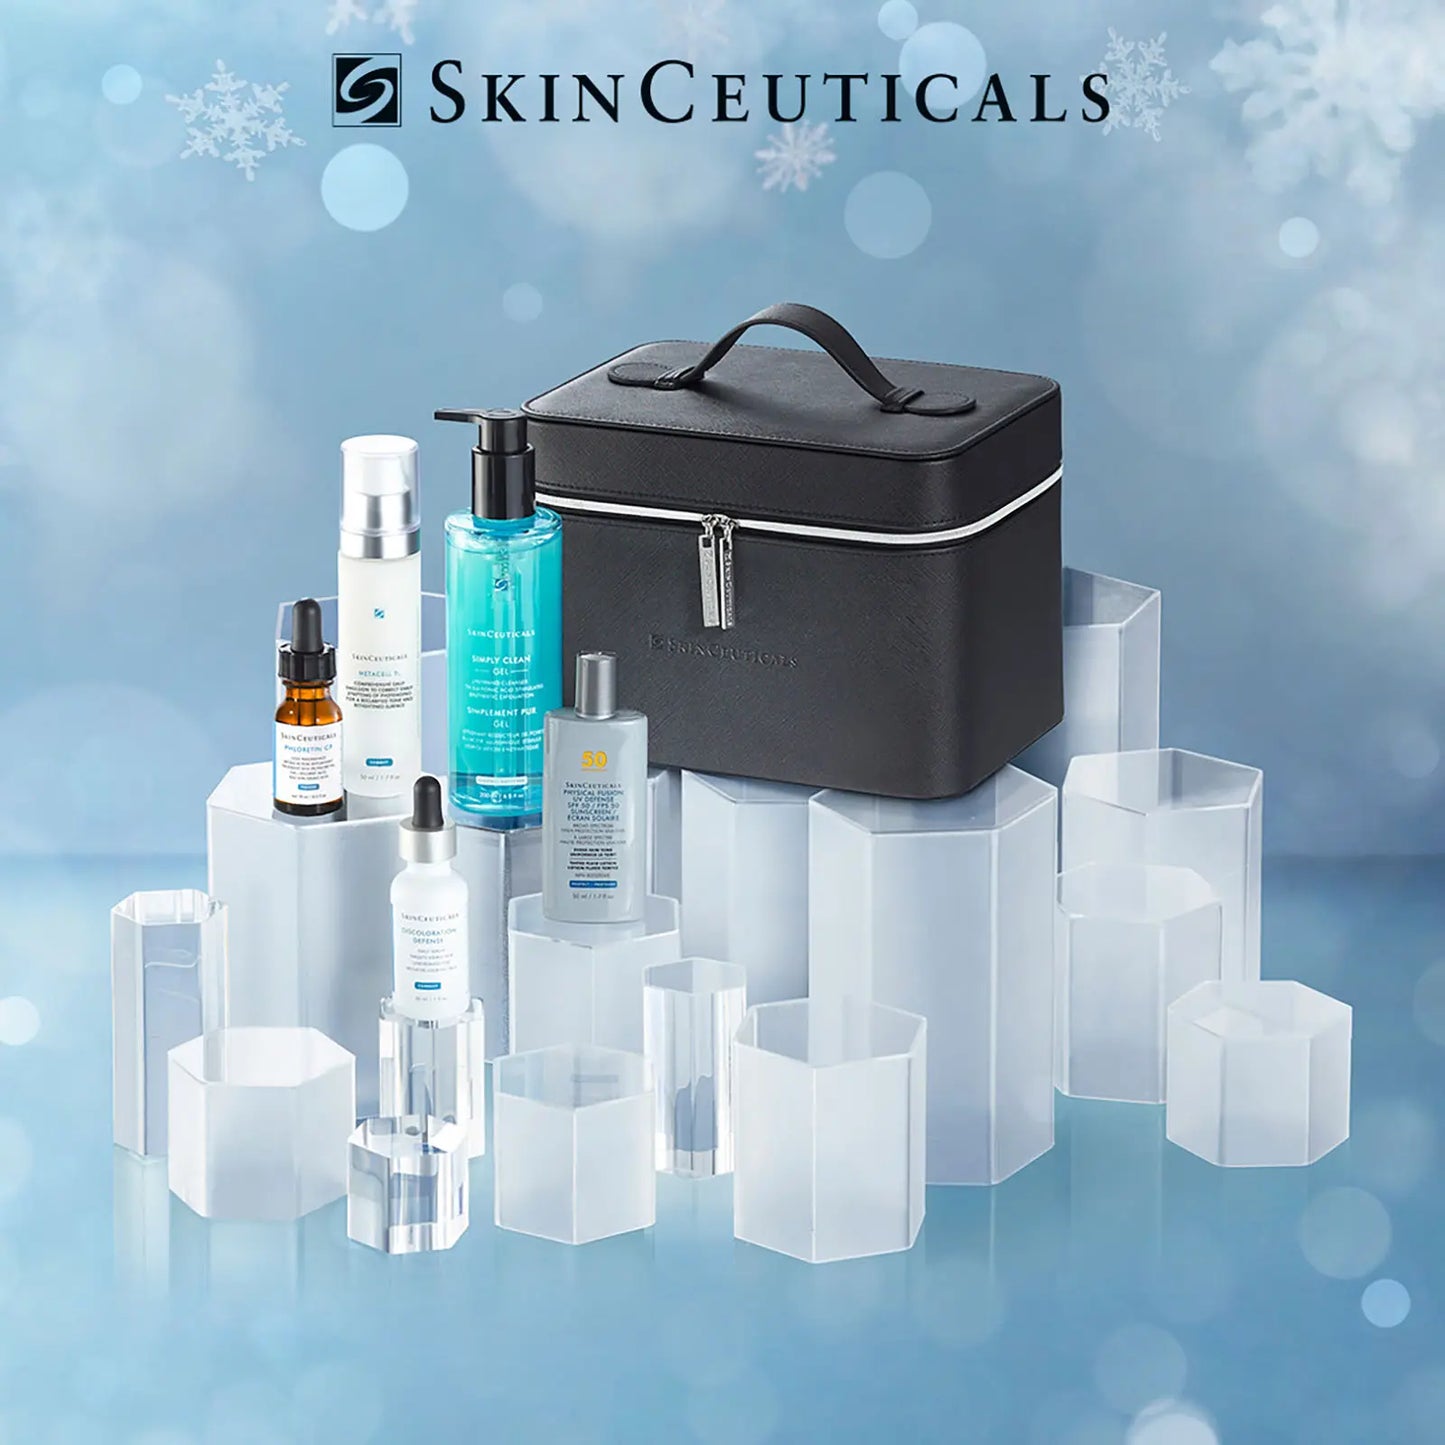 SkinCeuticals: Advanced Skin-Brightening Set